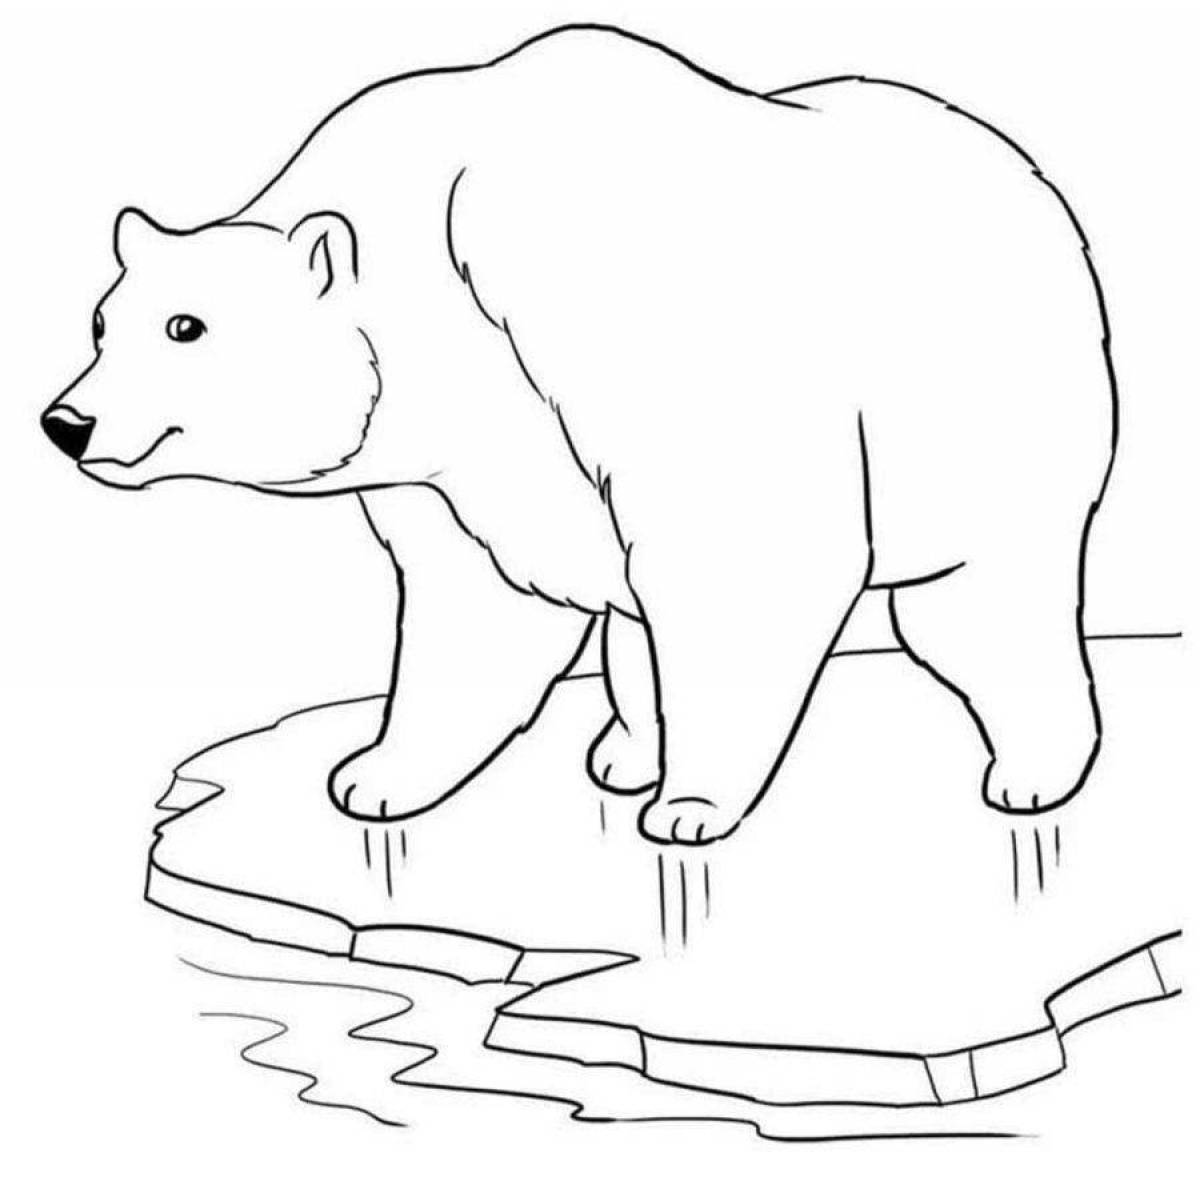 Coloring book of a busy polar bear